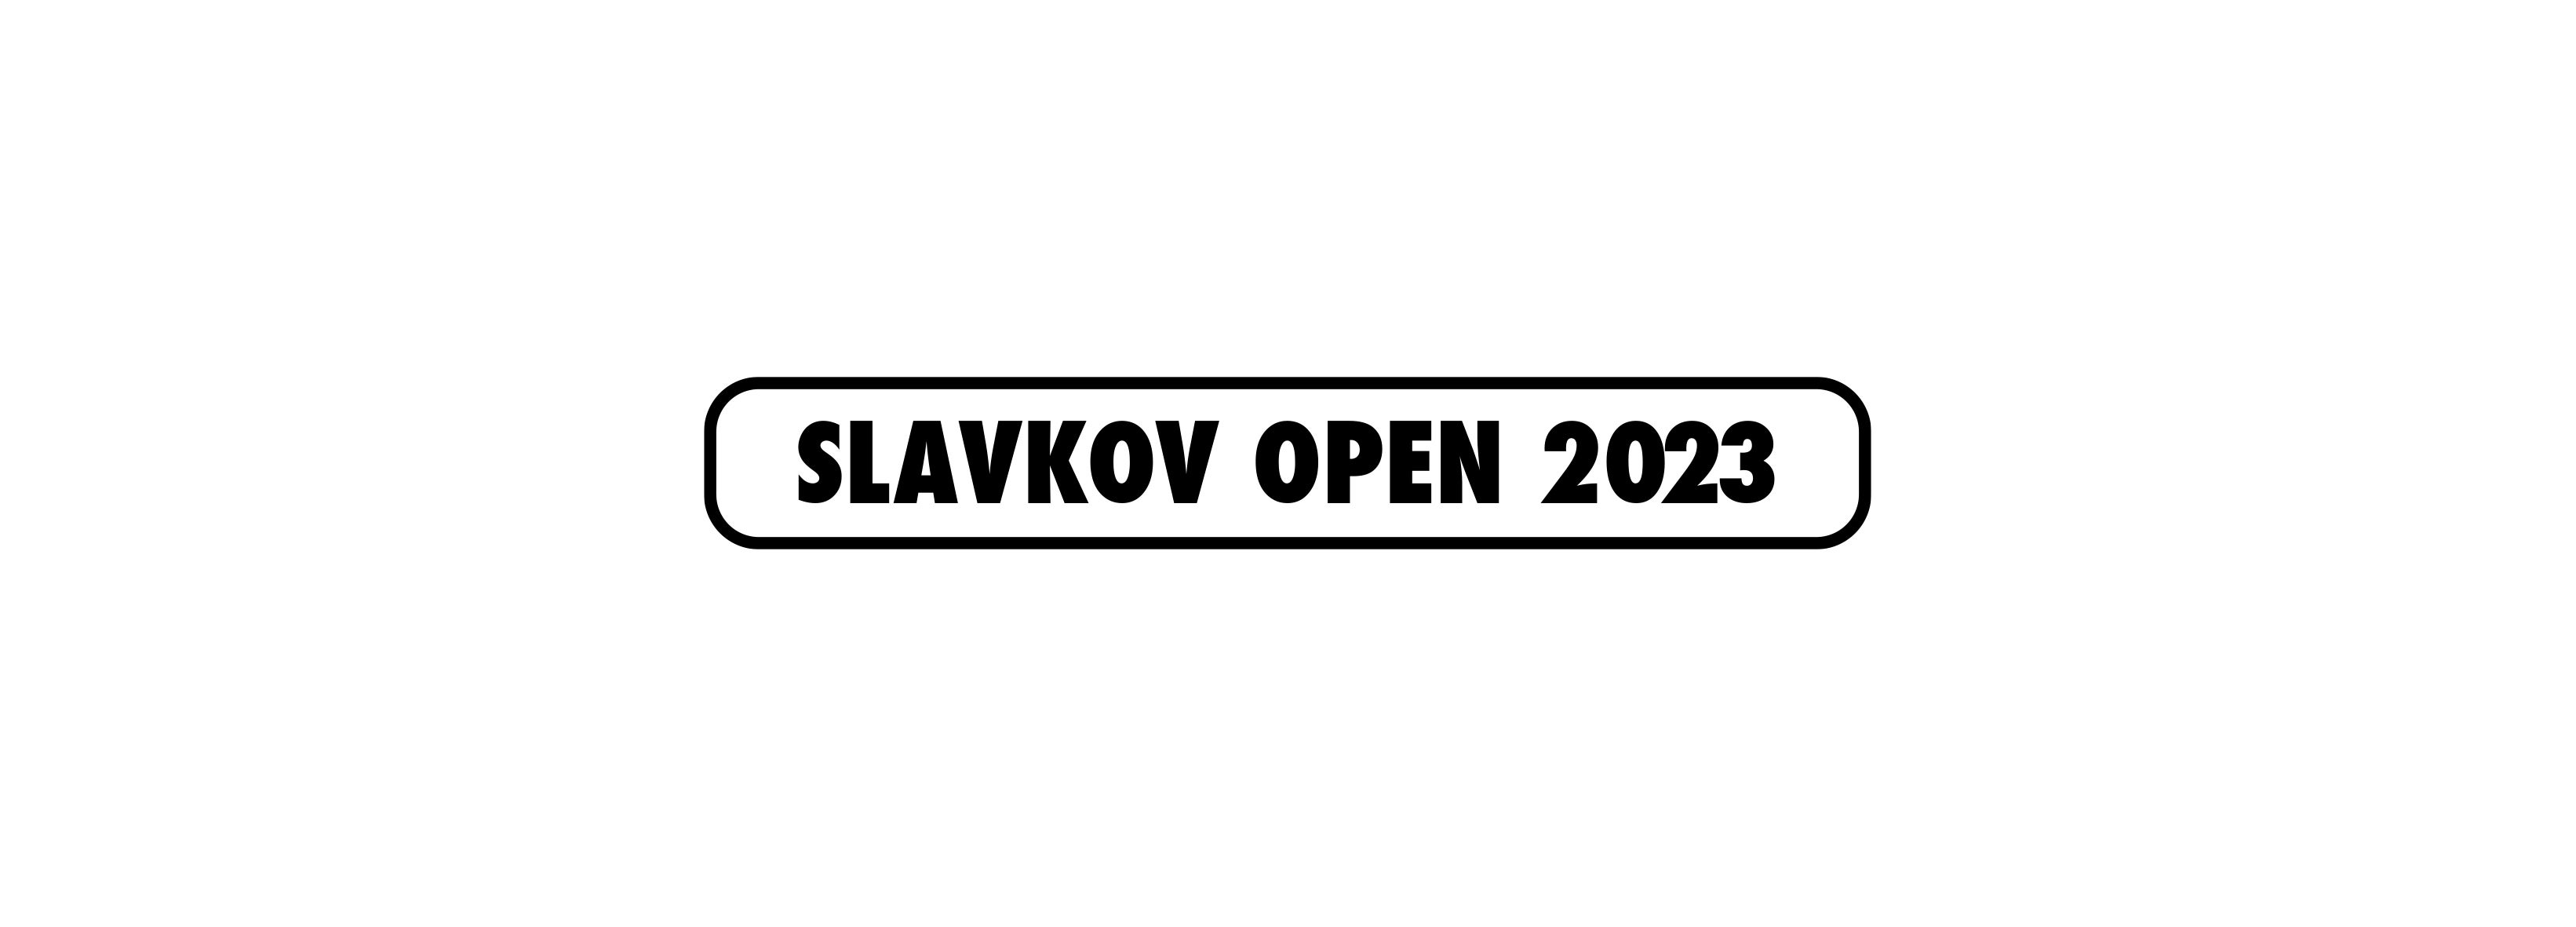 Slavkov Open 2023: Deep Purple (sobota)- Slavkov u Brna -Zámecký park Slavkov u Brna Slavkov u Brna Palackého nám. 1, Slavkov u Brna 68401